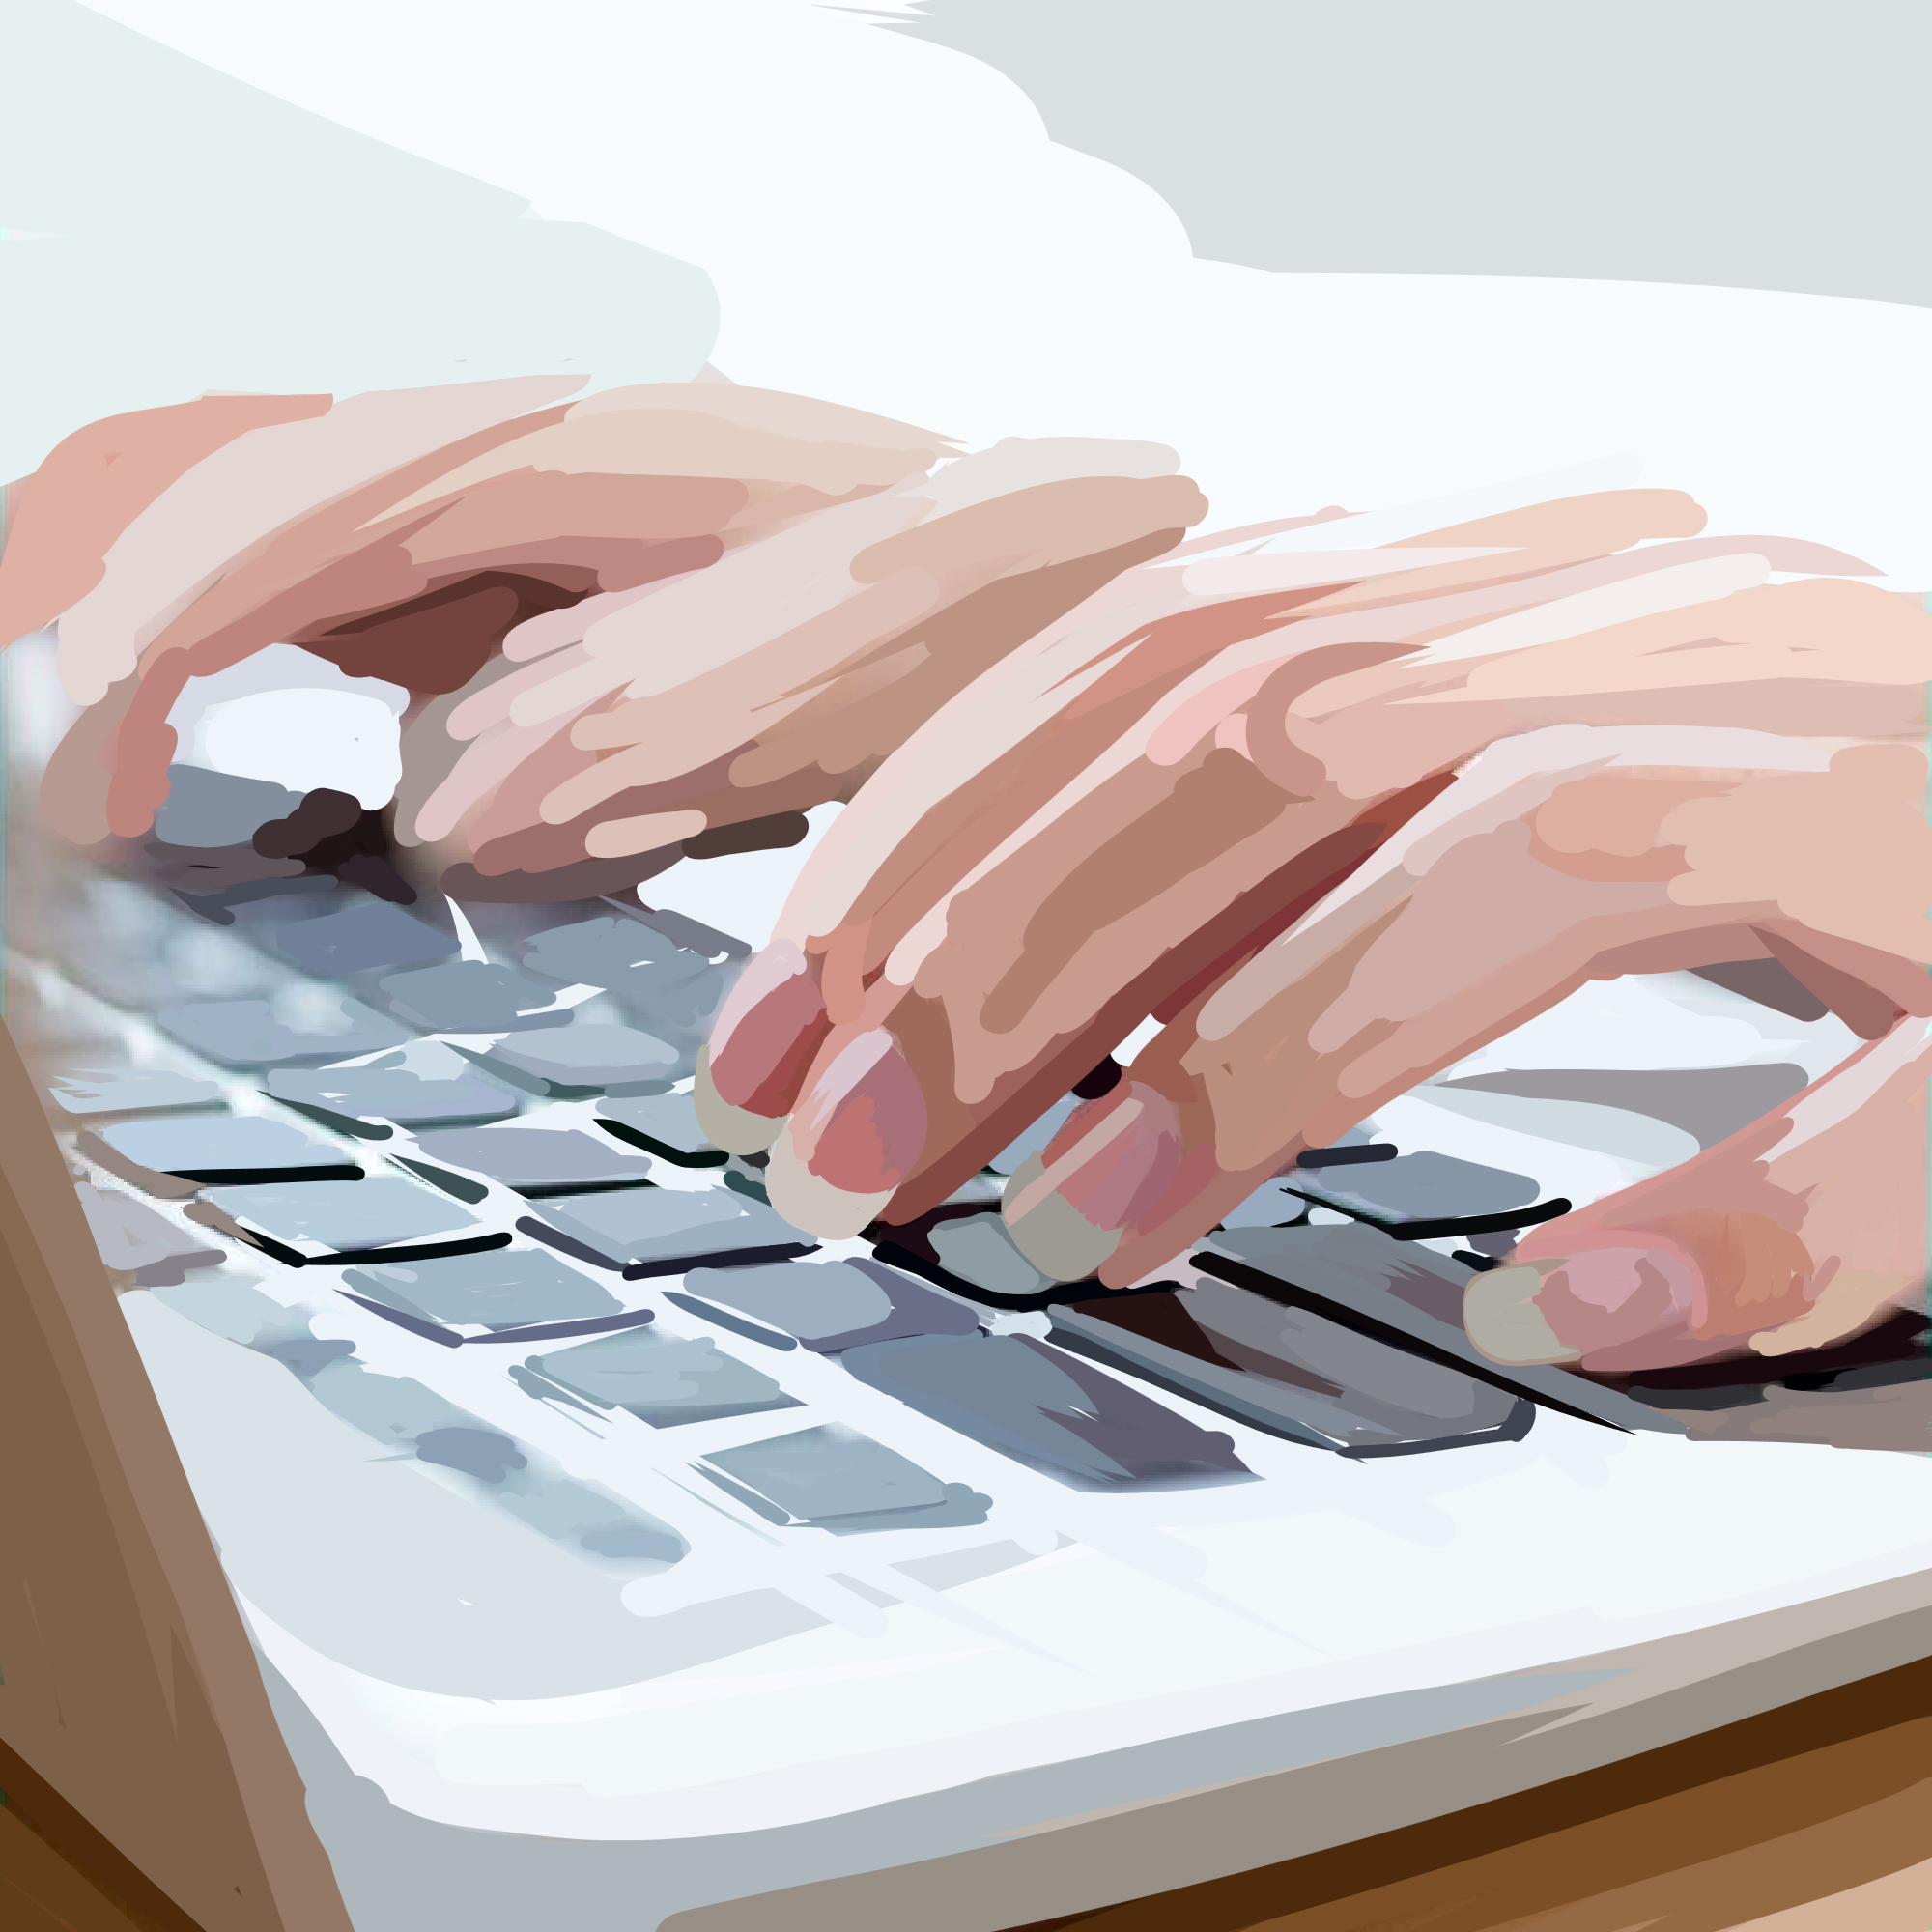 tangentbord, med fingrar som skriver - illustreration